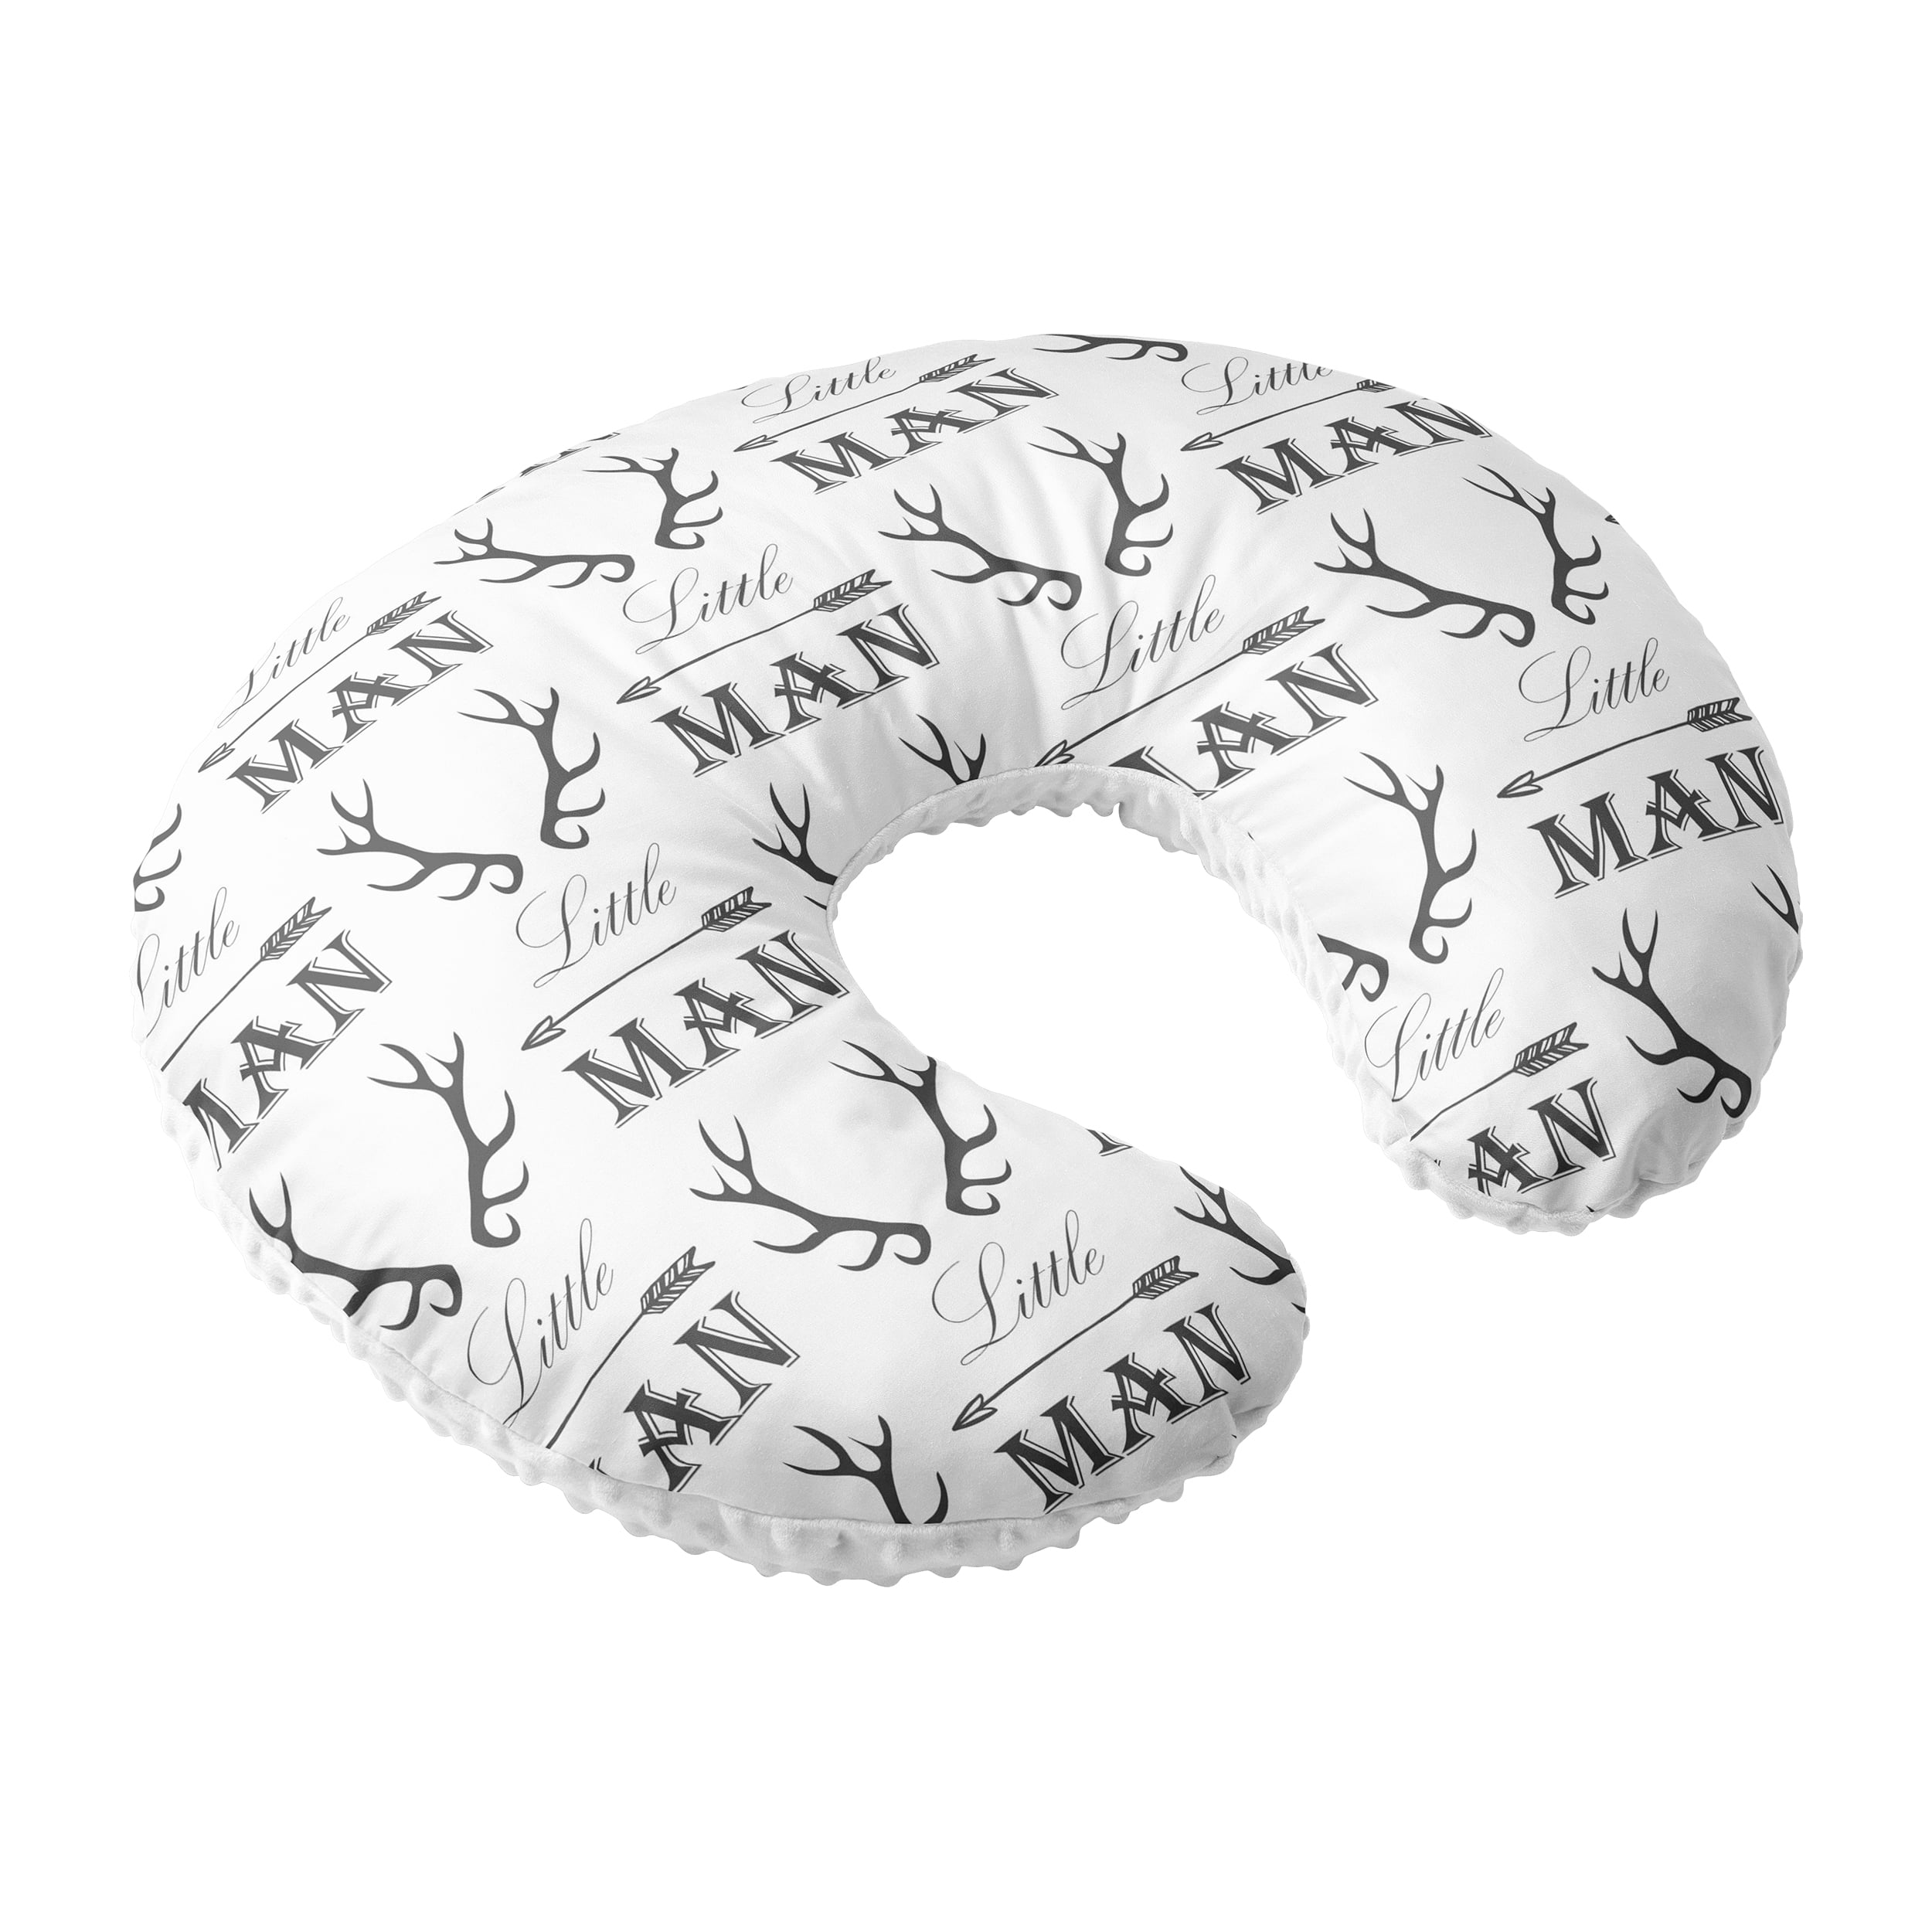 Wild Nursing Pillow Slipcover Monochrome Nursery Baby Gift w/ 100% NonToxic USA Cotton/Minky 